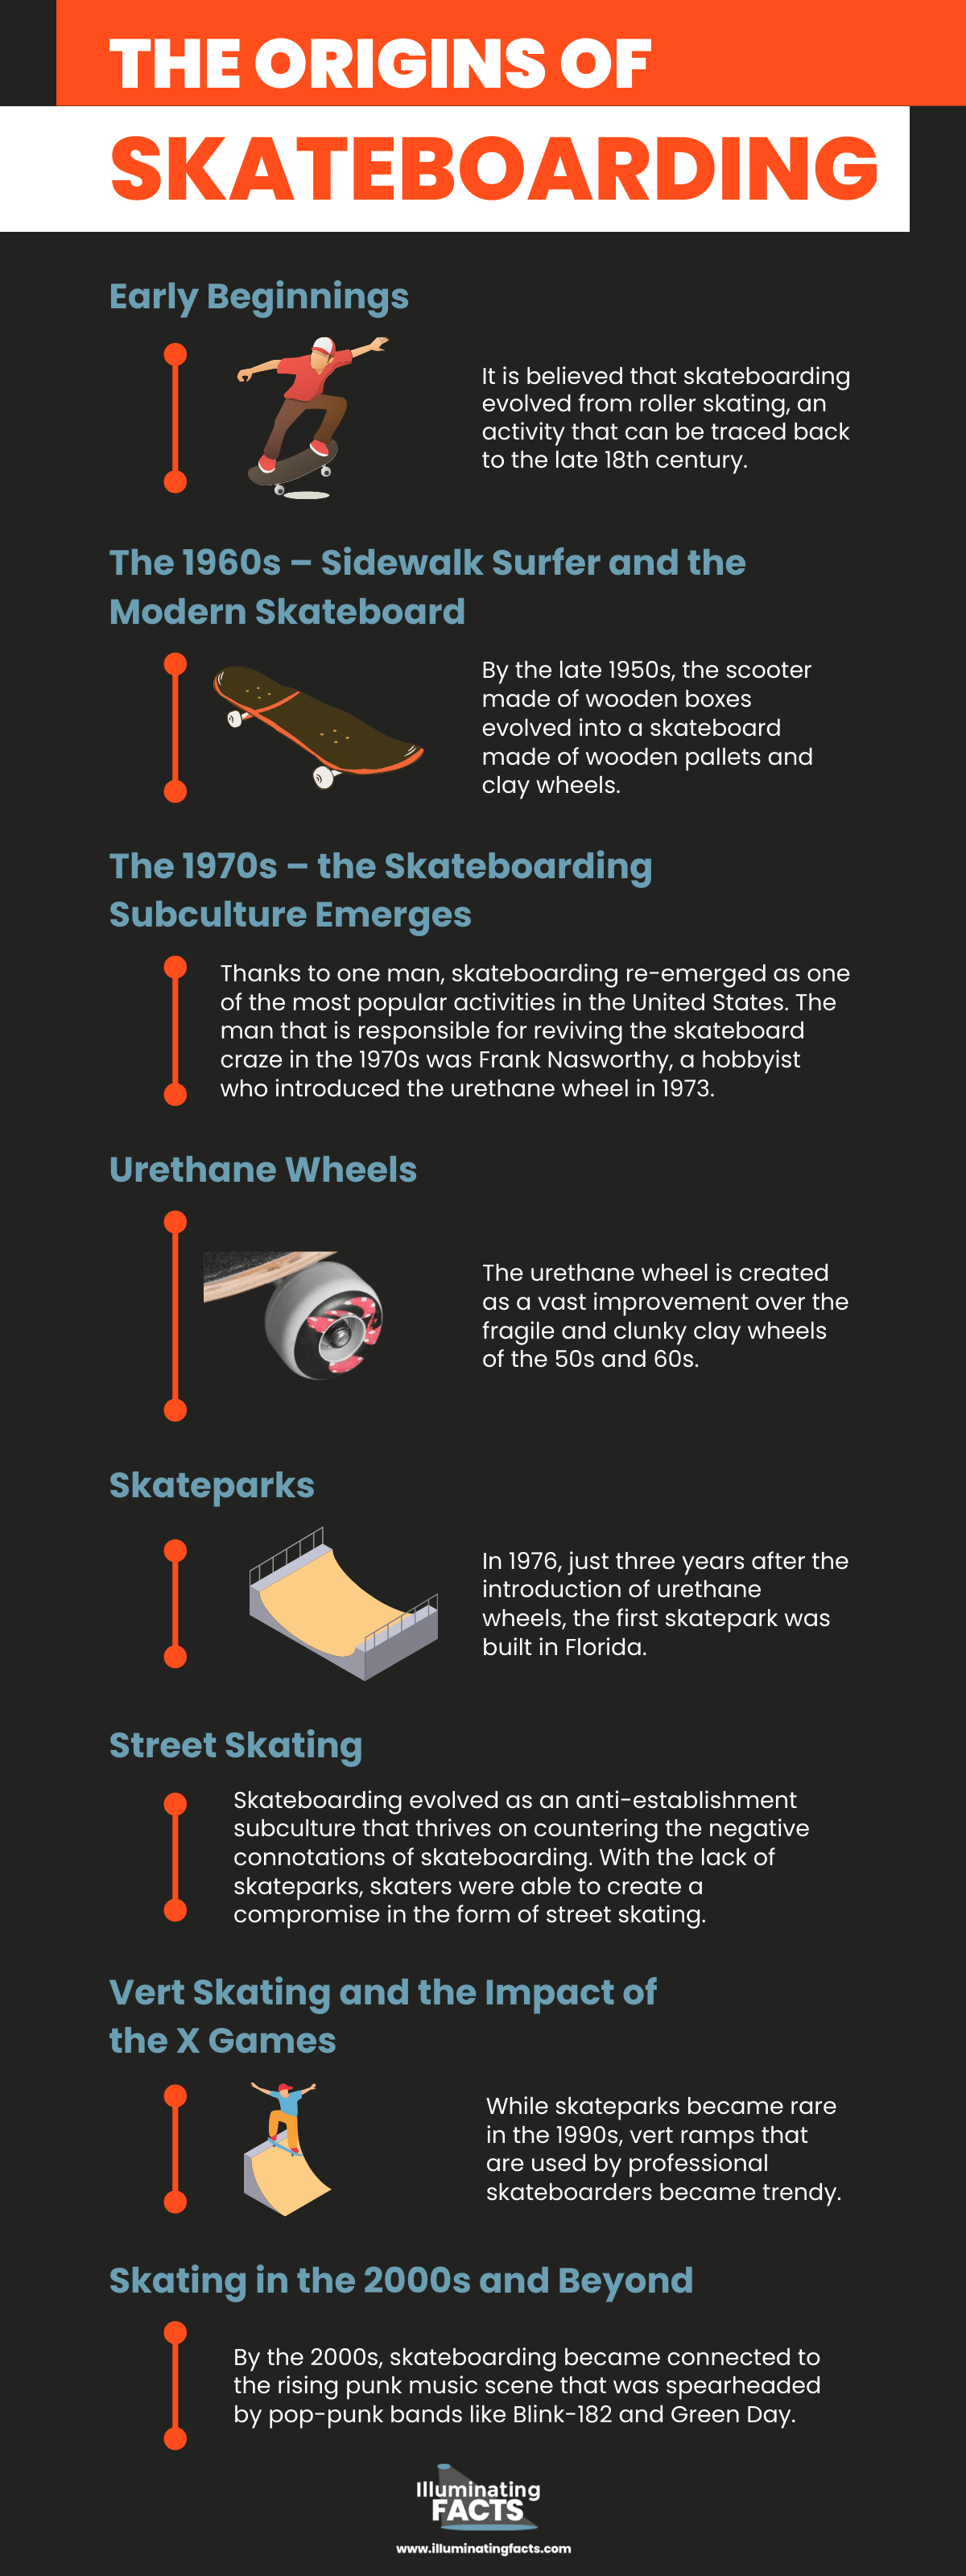 The Origins of Skateboarding